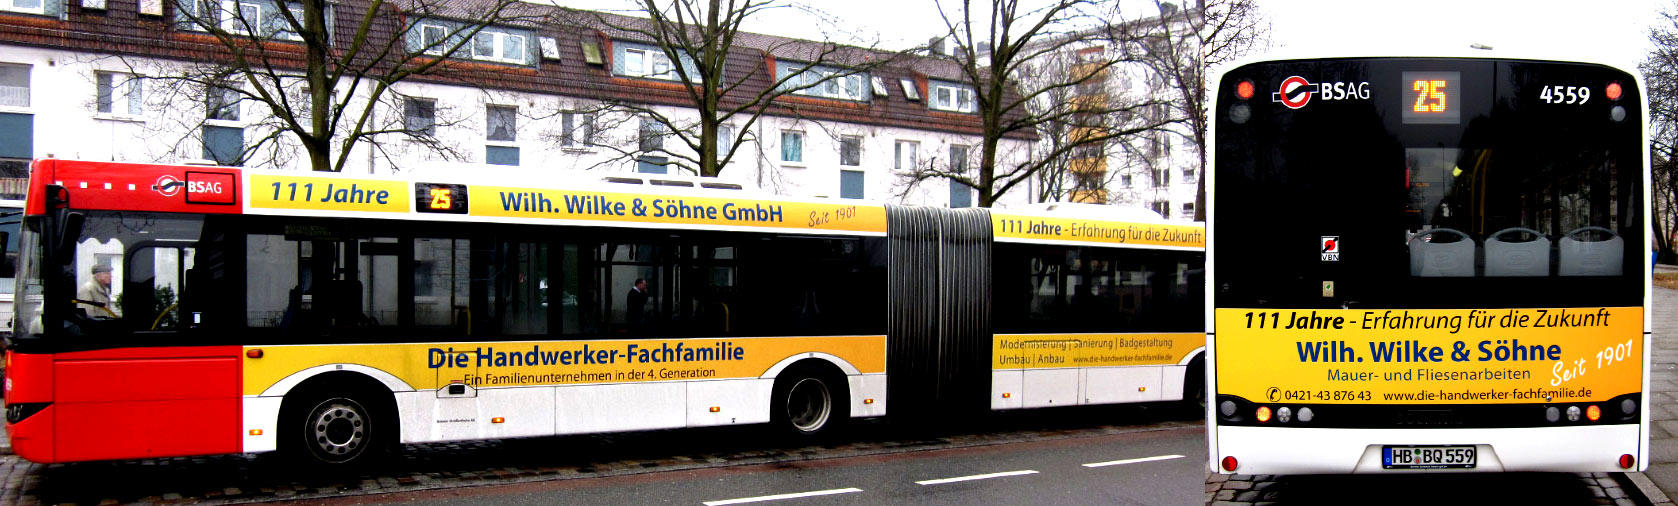 Bus Wilh. Wilke & Söhne GmbH